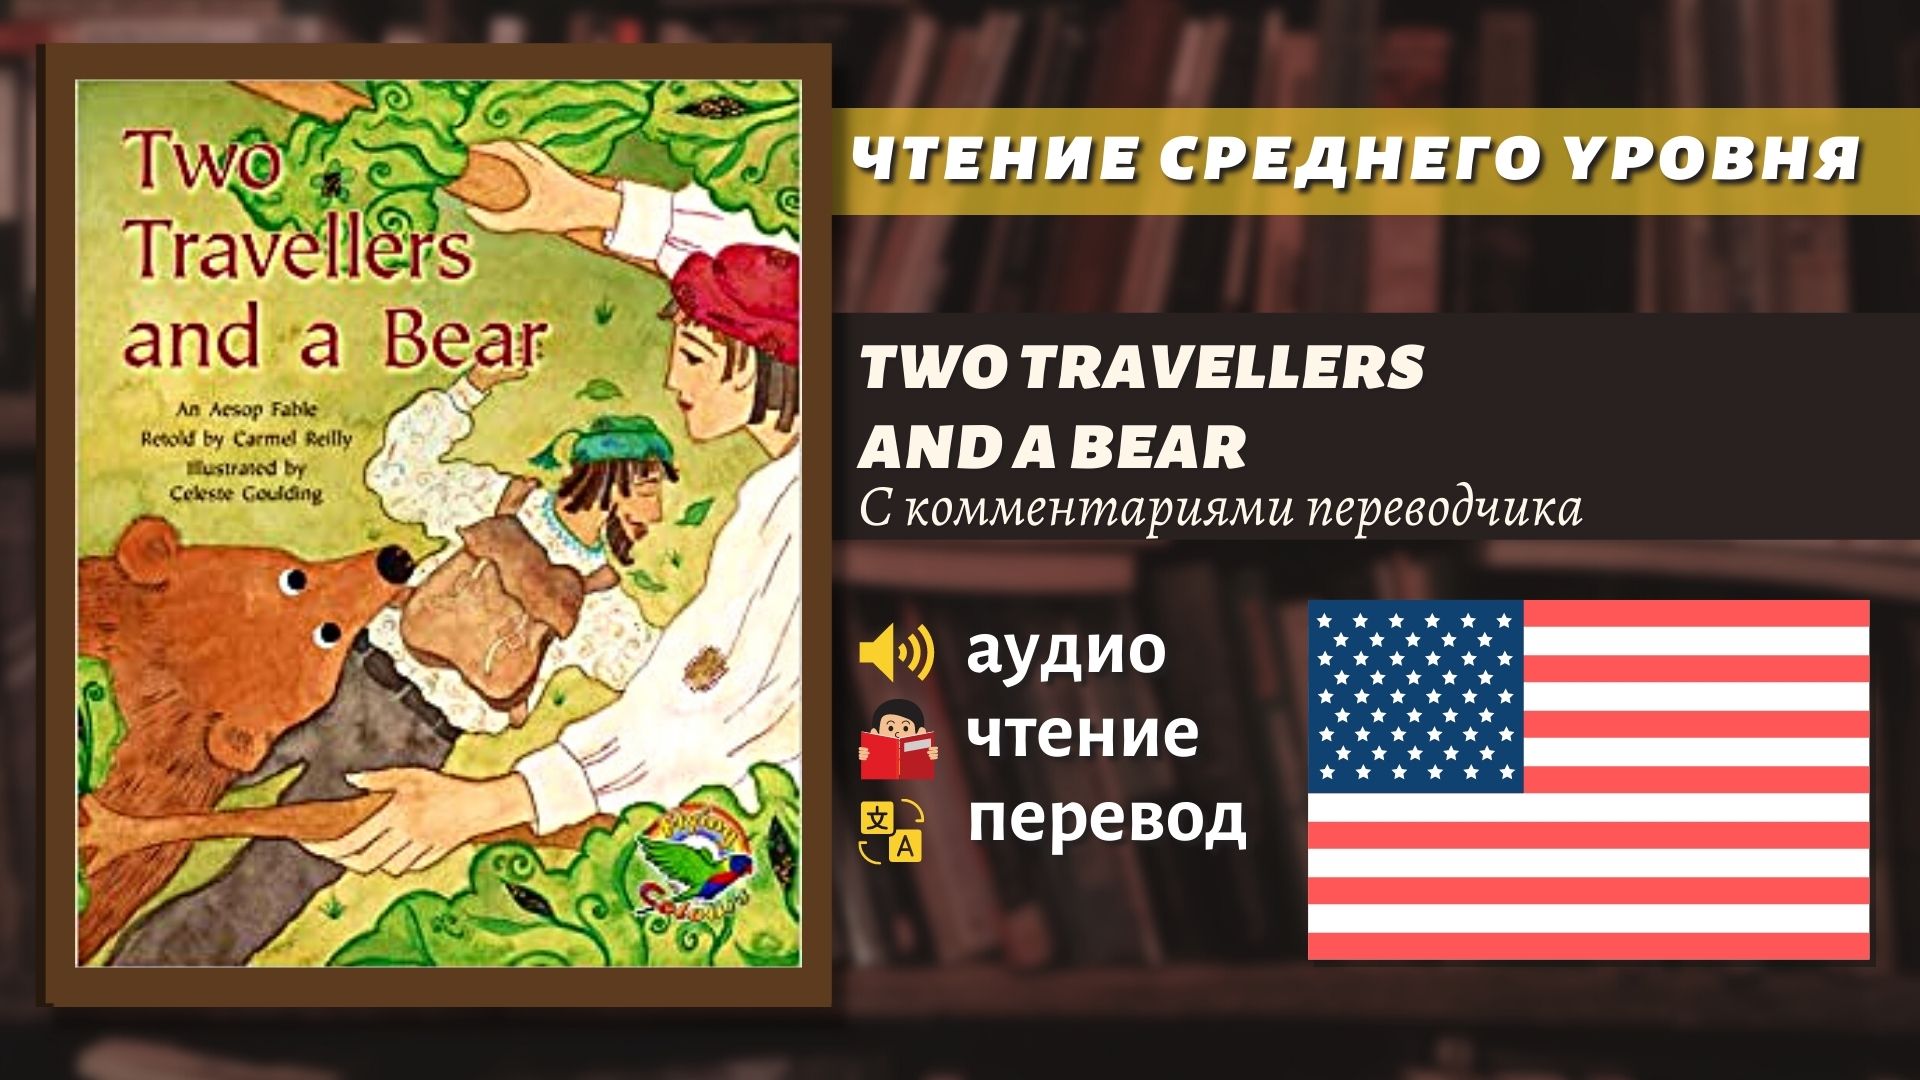 ЧТЕНИЕ НА АНГЛИЙСКОМ - Чтение среднего уровня / Two Travelers & a Bear